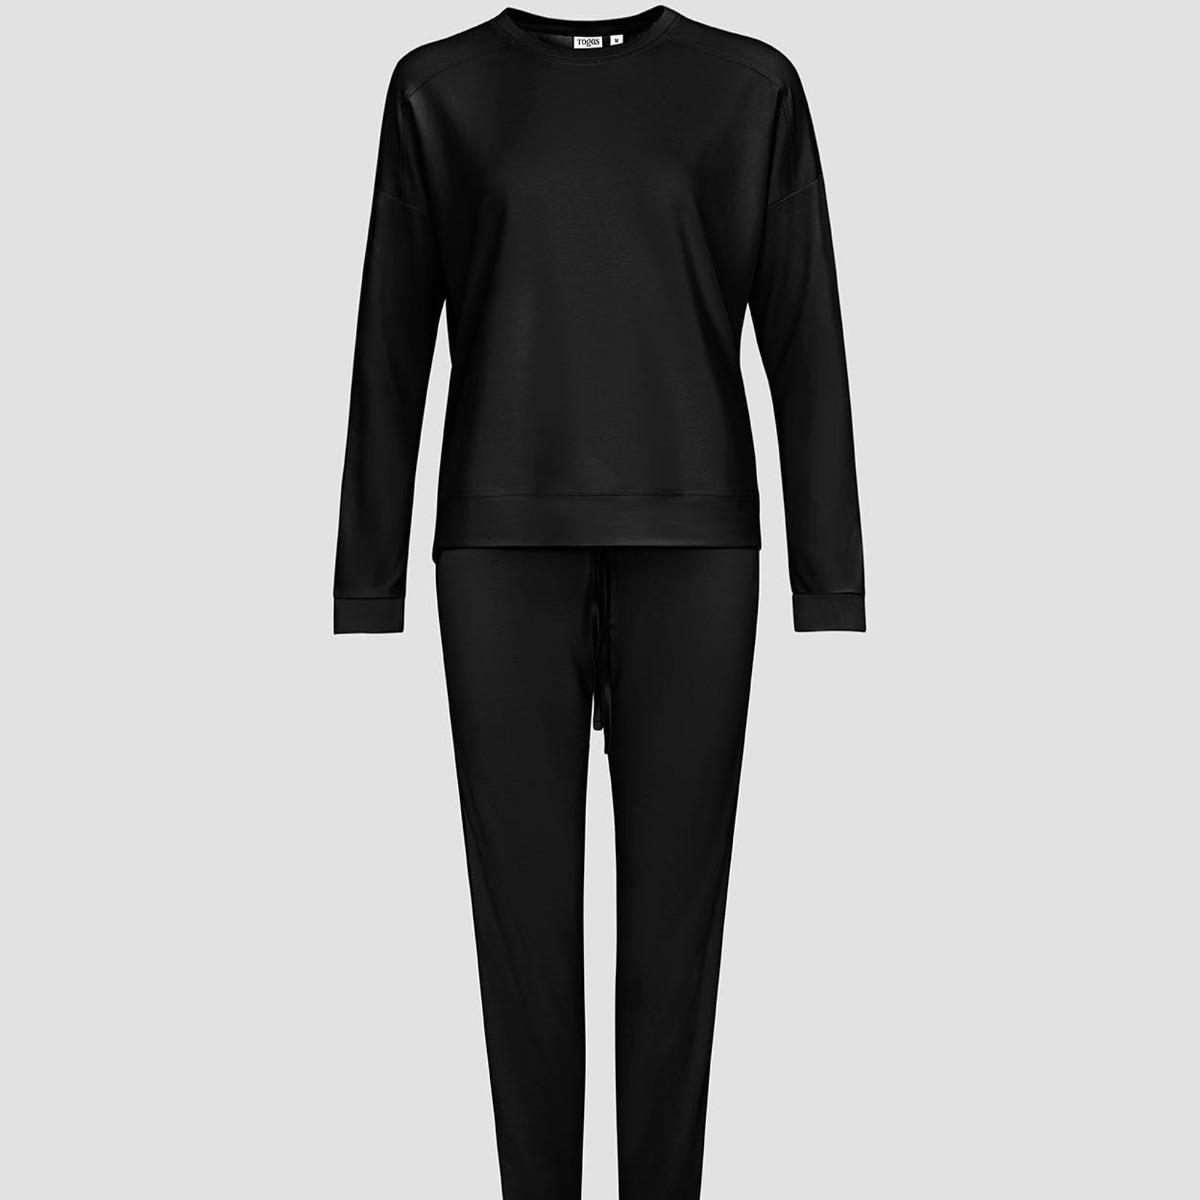 Женская пижама Togas Рене чёрная XS (42) пижама togas рене серая женская xs 42